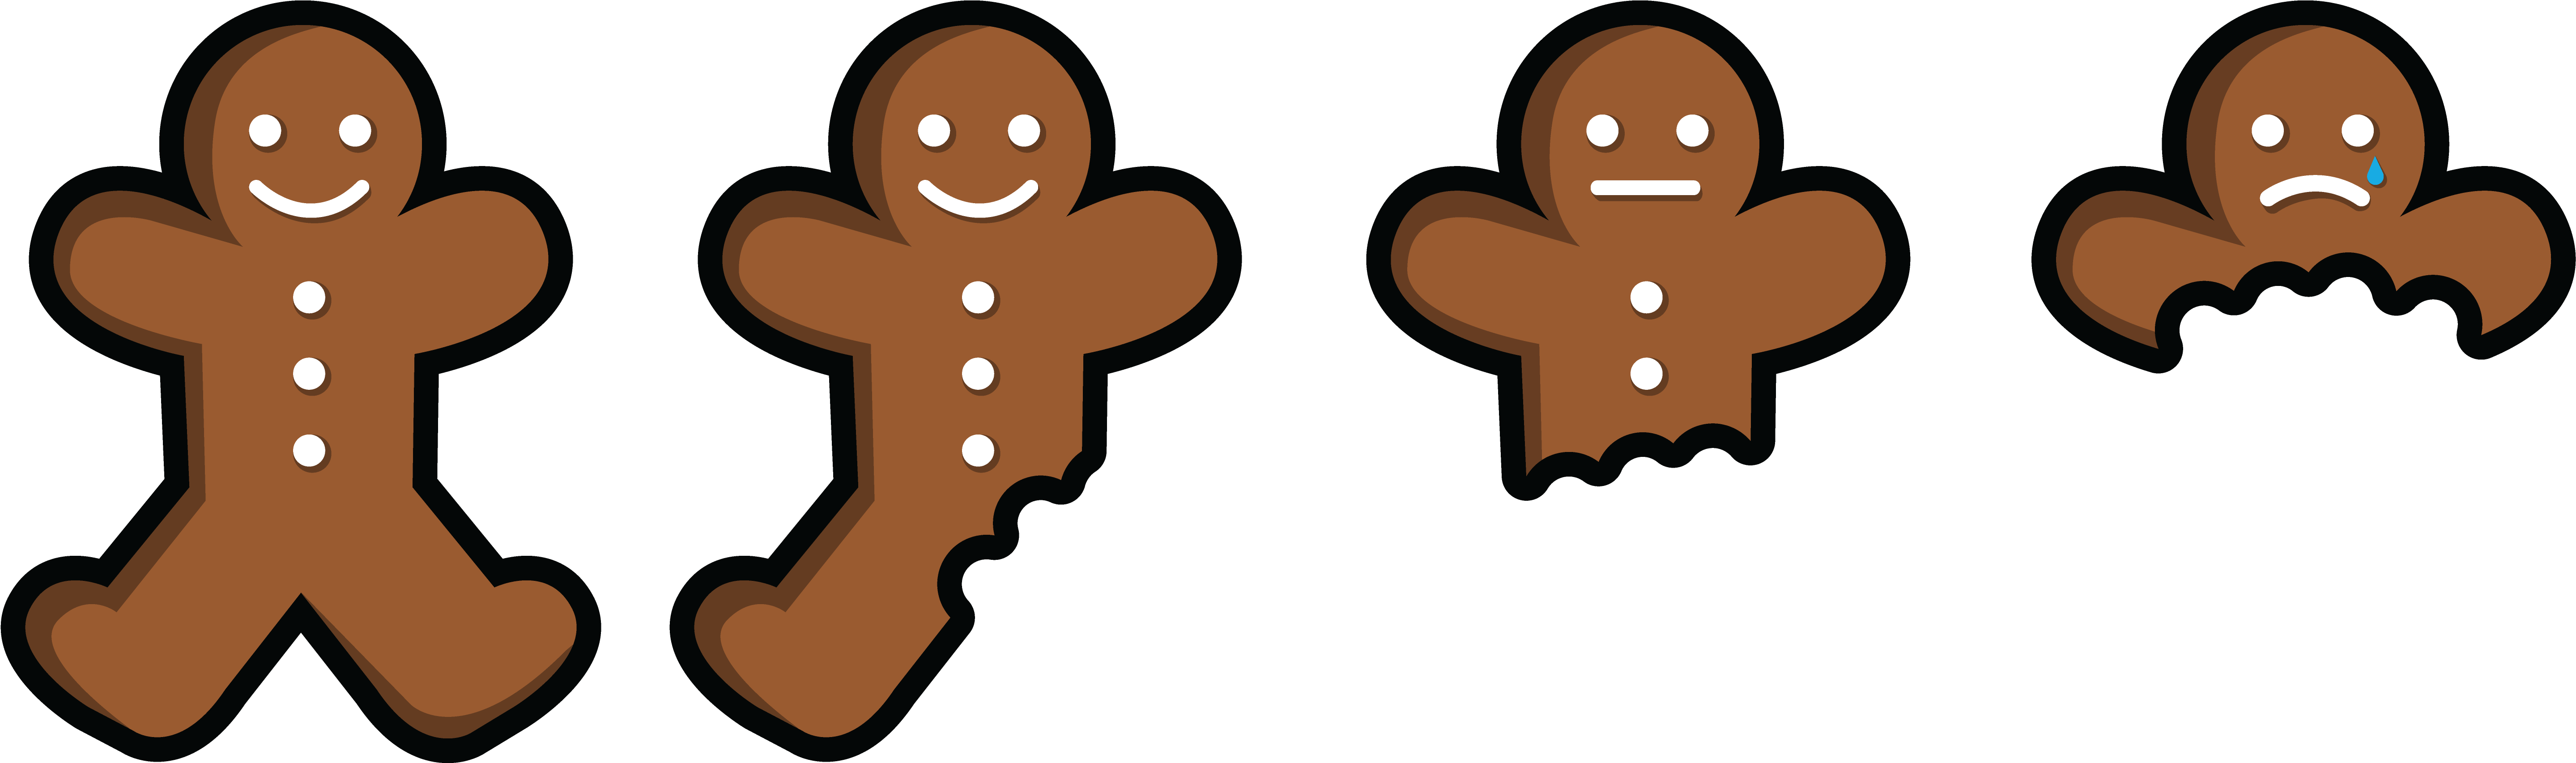 Eaten - Gingerbread Man Being Eaten (6400x2500)